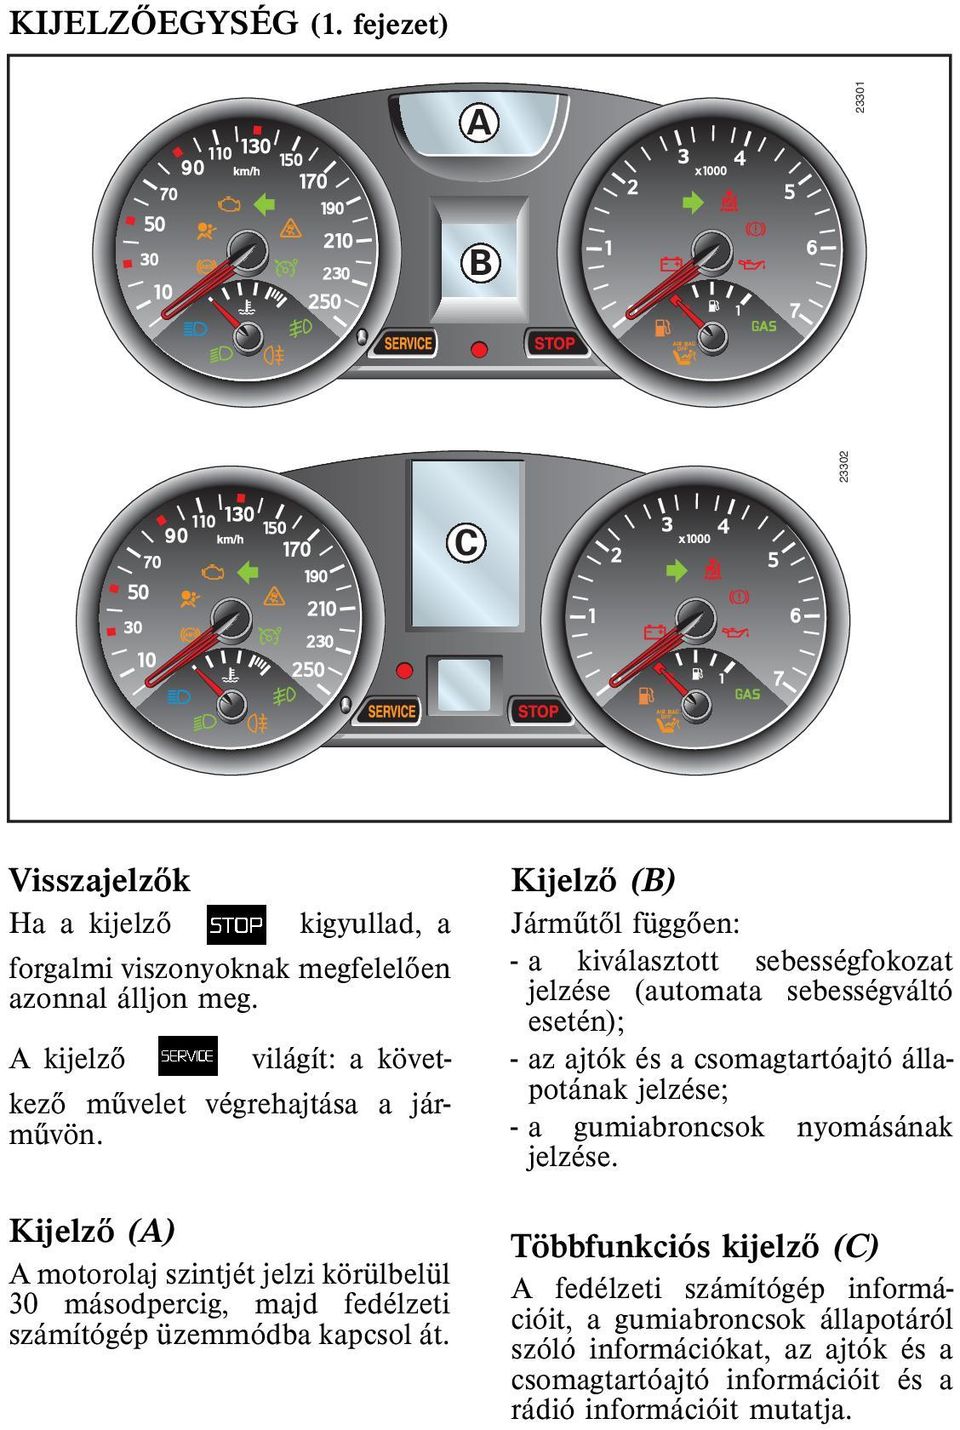 Kijelzõ (A) A motorolaj szintjét jelzi körülbelül 30 másodpercig, majd fedélzeti számítógép üzemmódba kapcsolát.